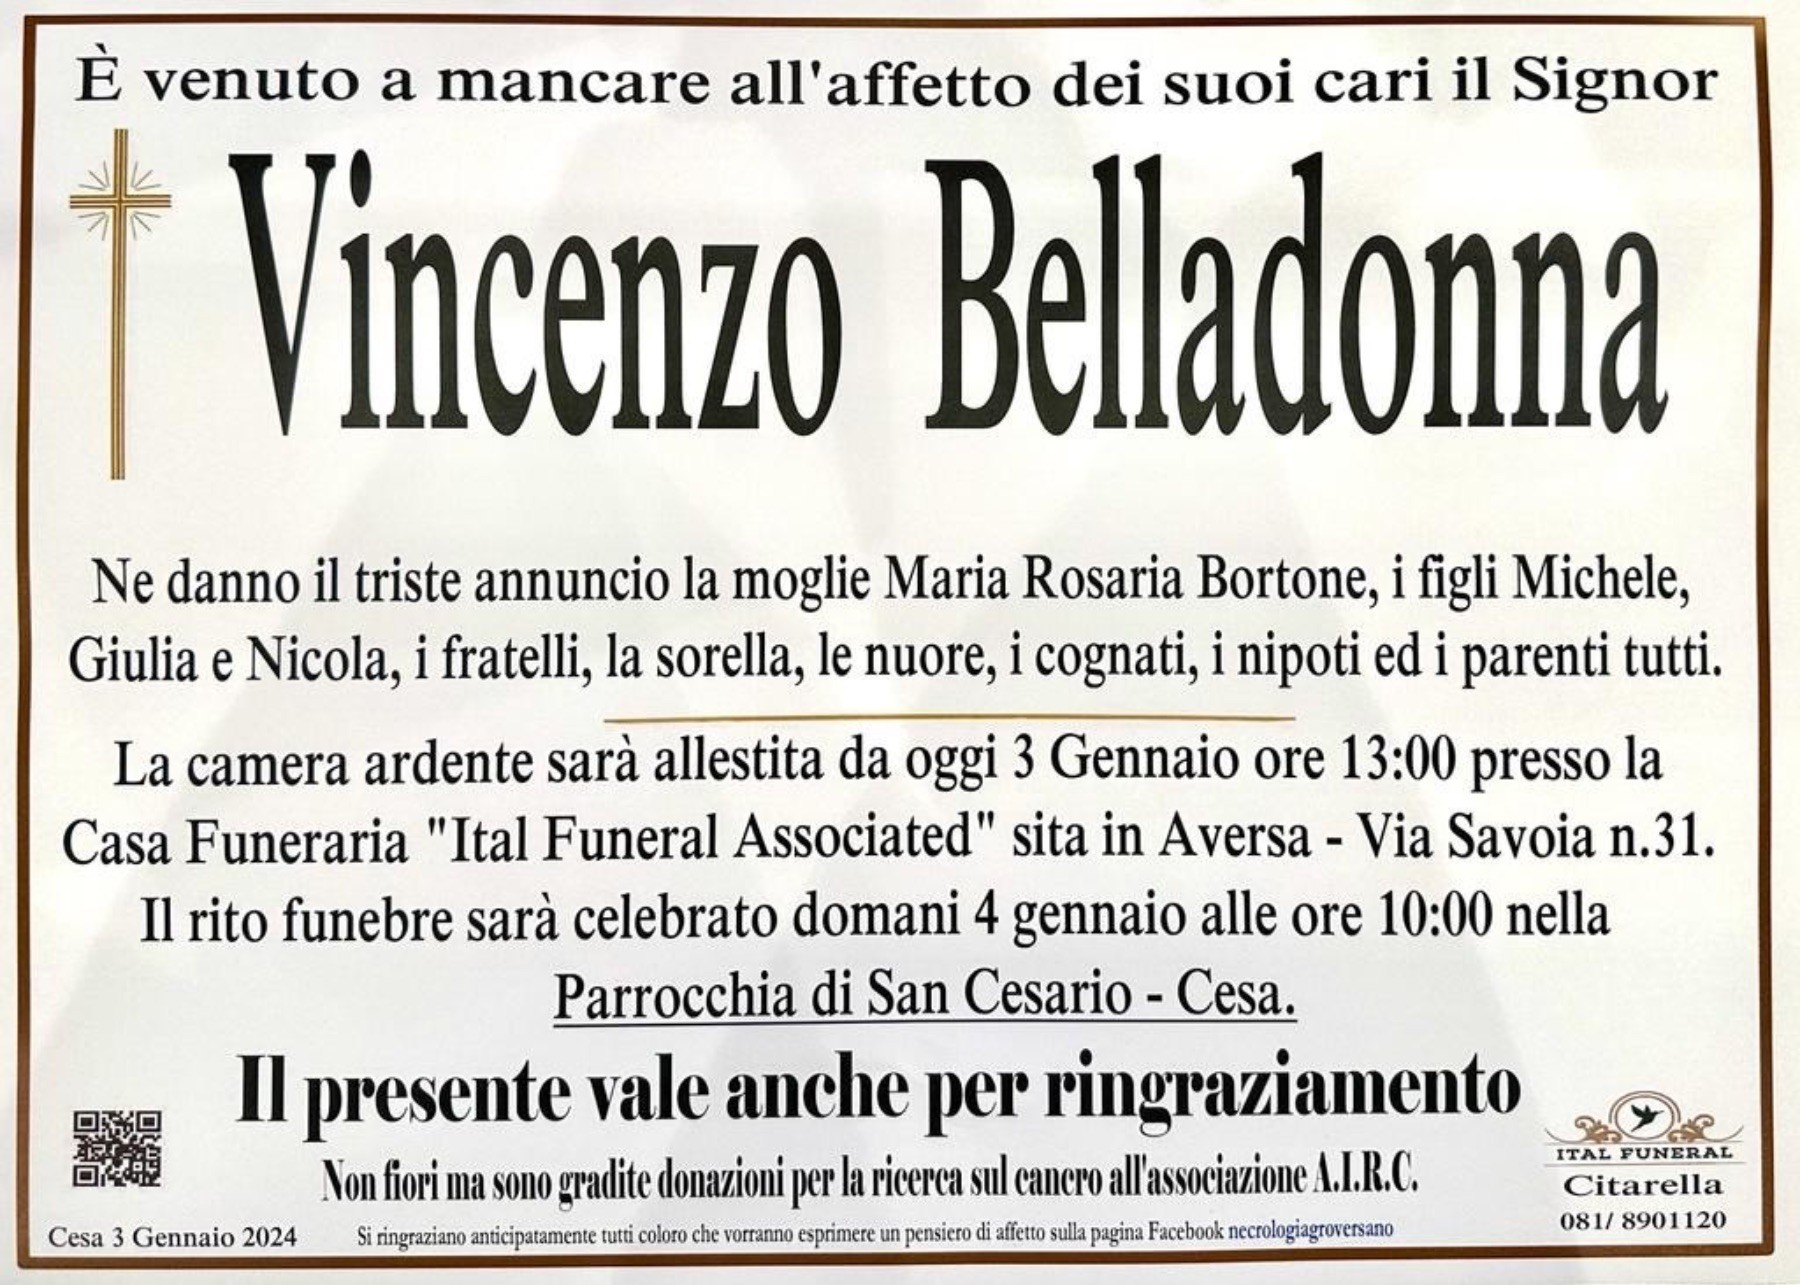 Vincenzo Belladonna